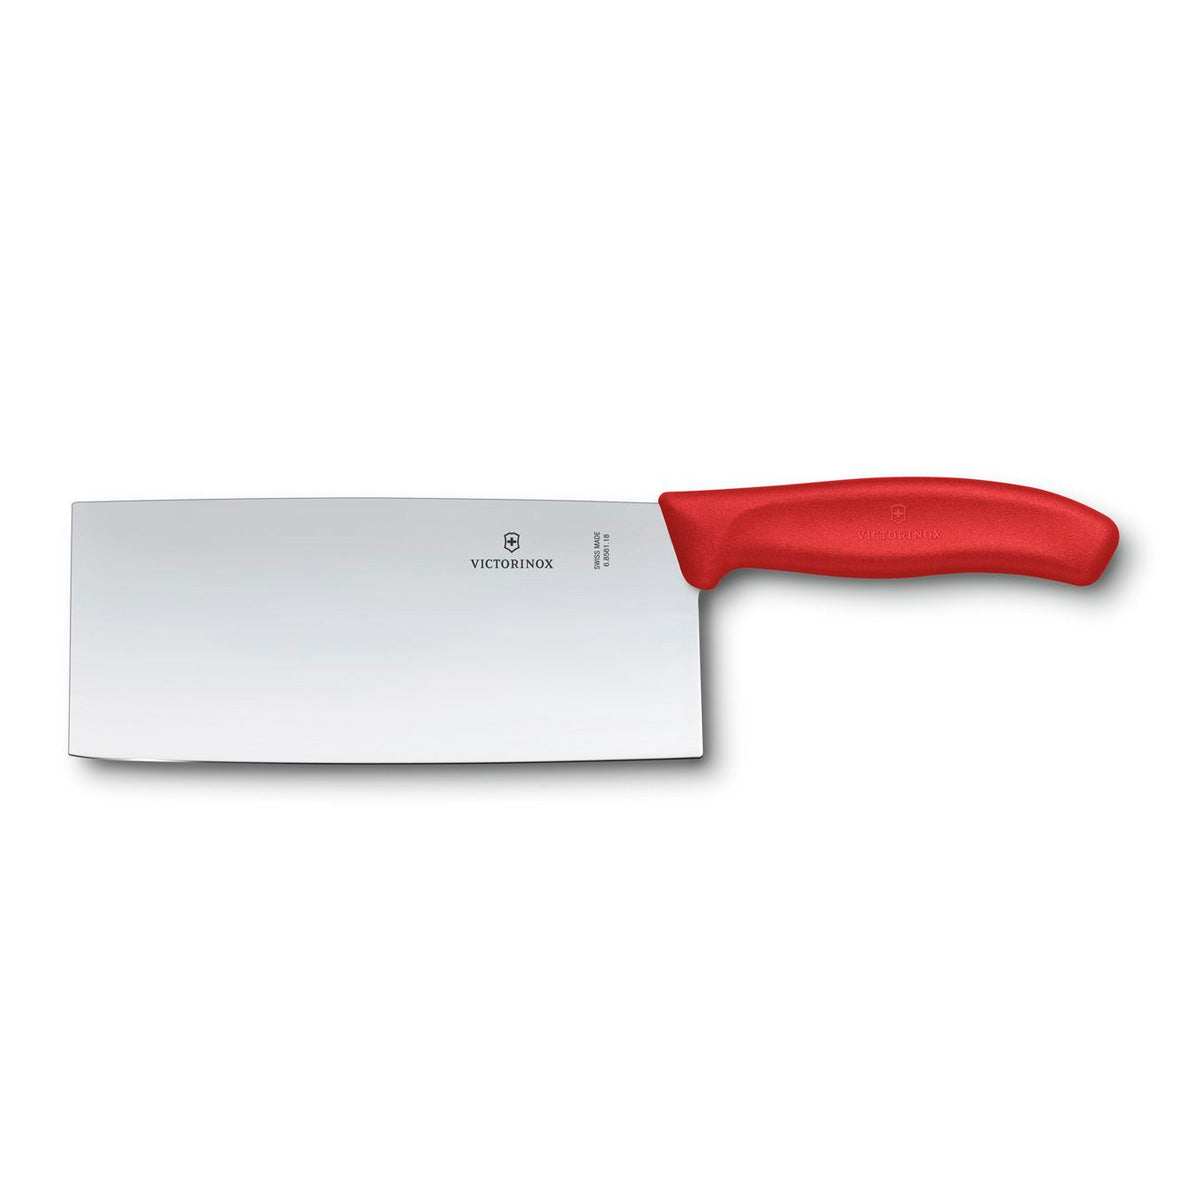 Cuchillo Chef de estilo Chino Mango Rojo Victorinox – ZONA CHEF